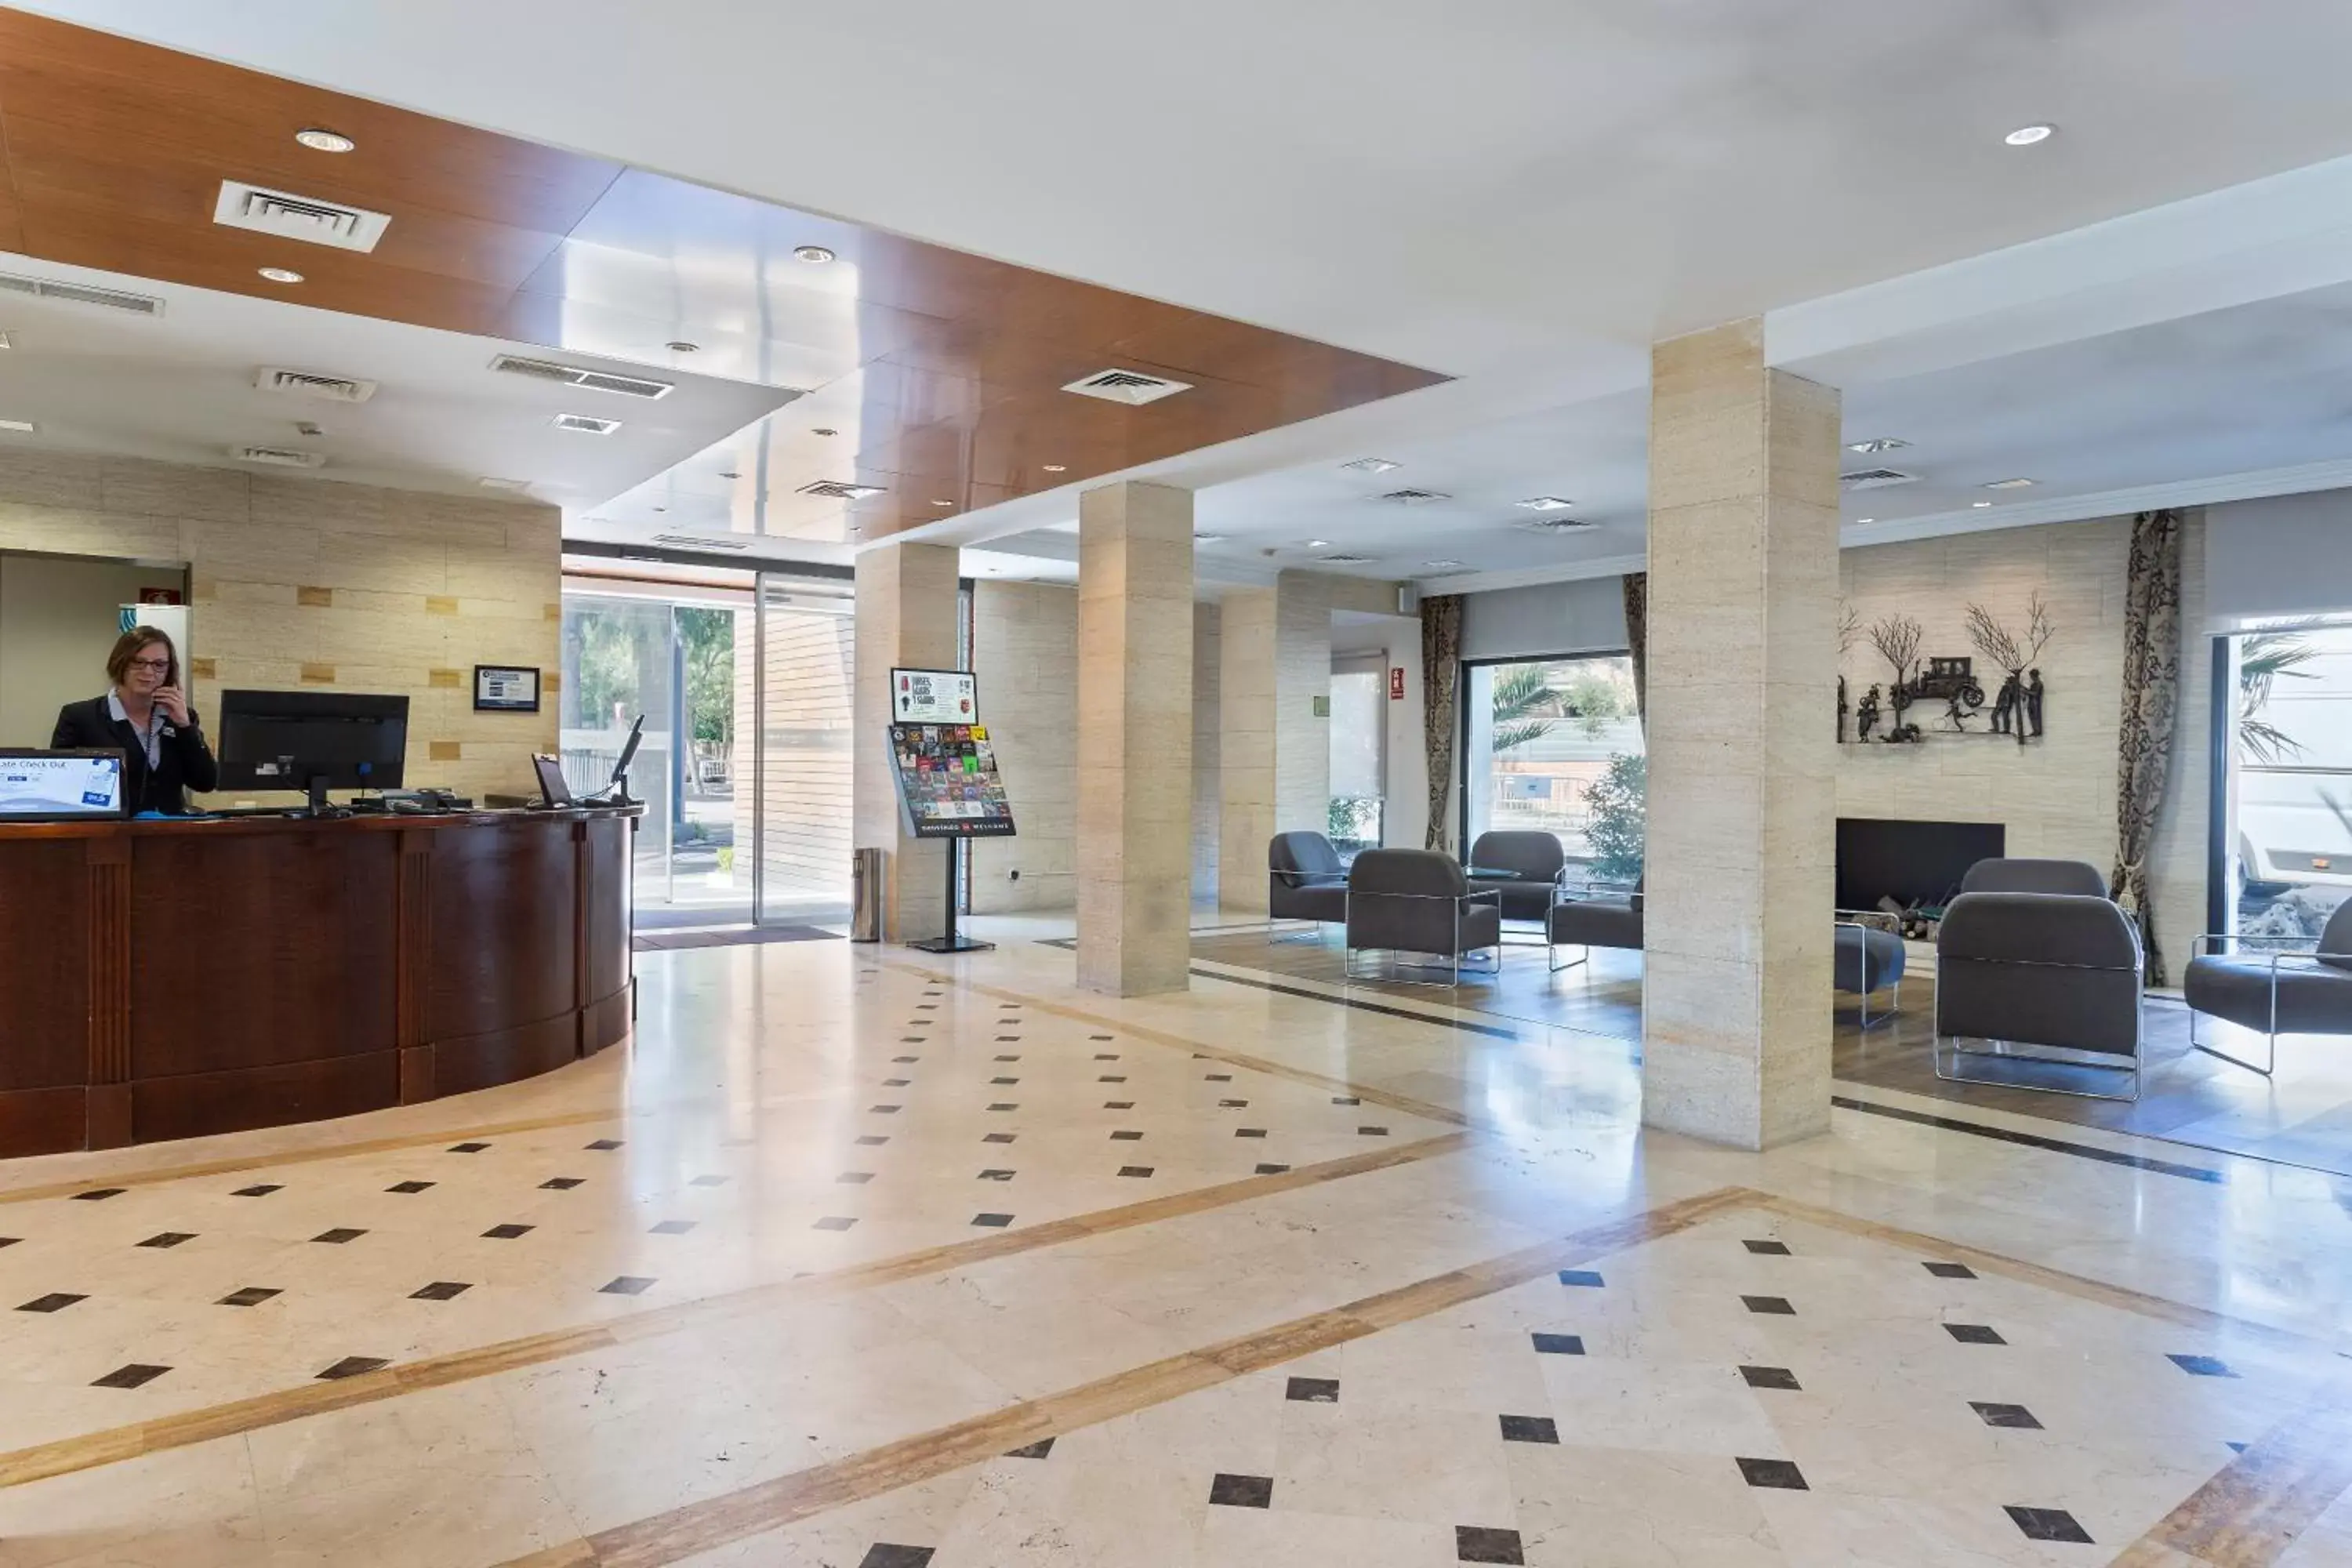 Lobby or reception, Lobby/Reception in Hotel Best Osuna